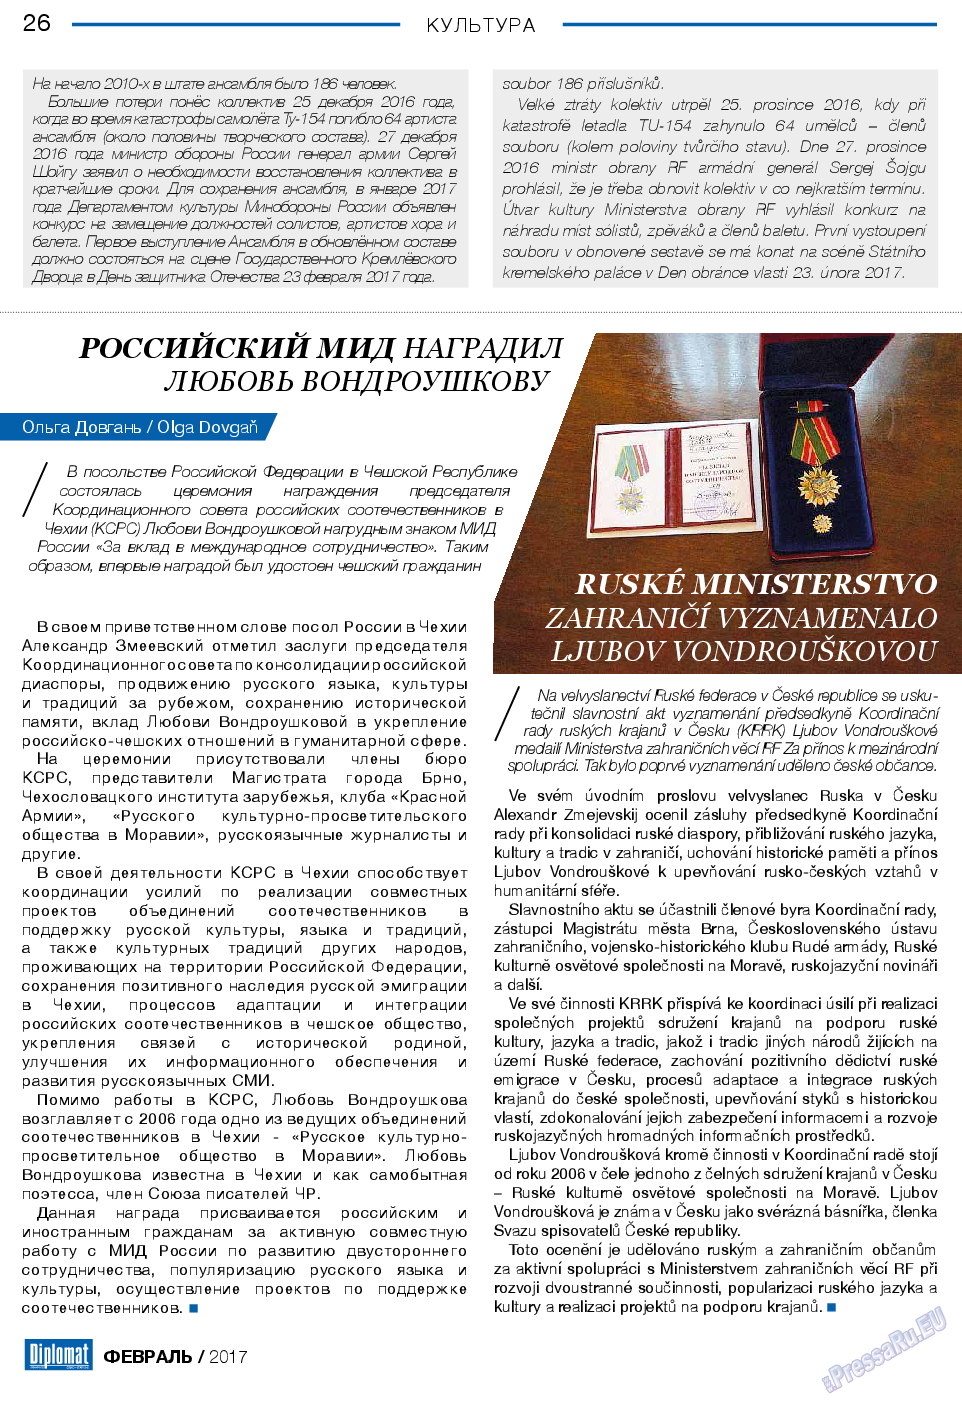 Diplomat, газета. 2017 №89 стр.26